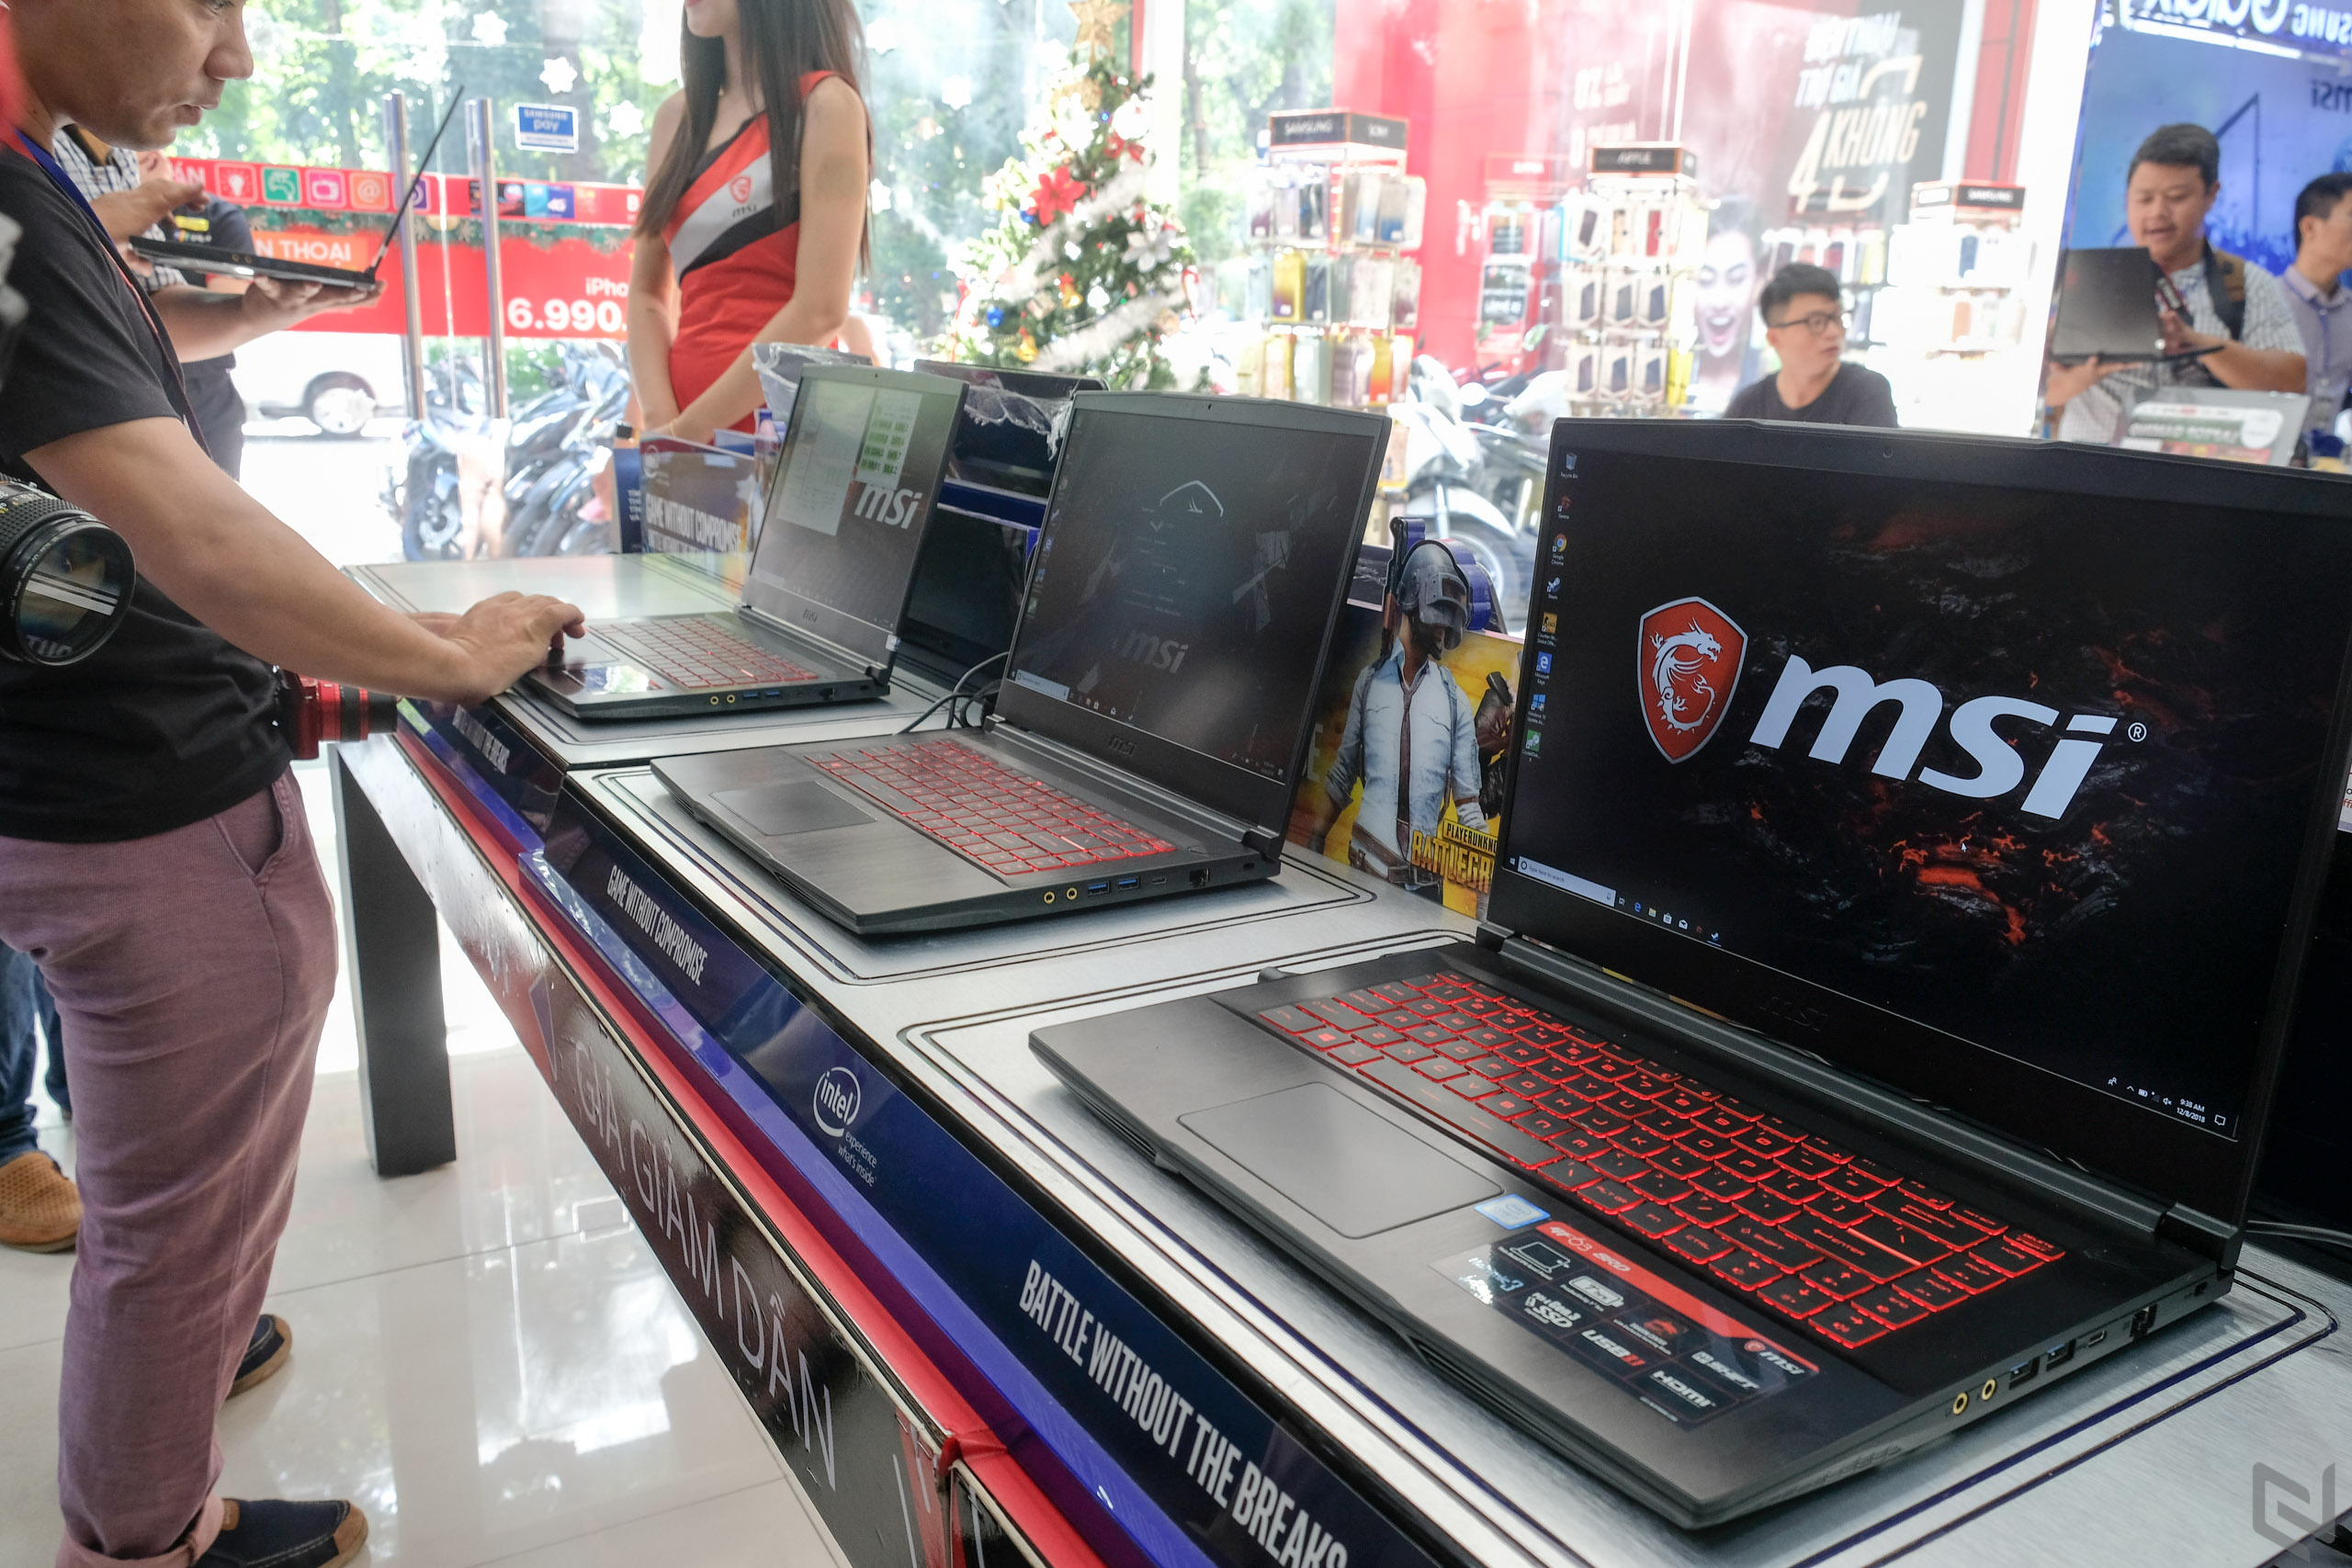 MSI giới thiệu Laptop Gaming mỏng nhẹ GF63 phiên bản Optane độc quyền tại FPT Shop